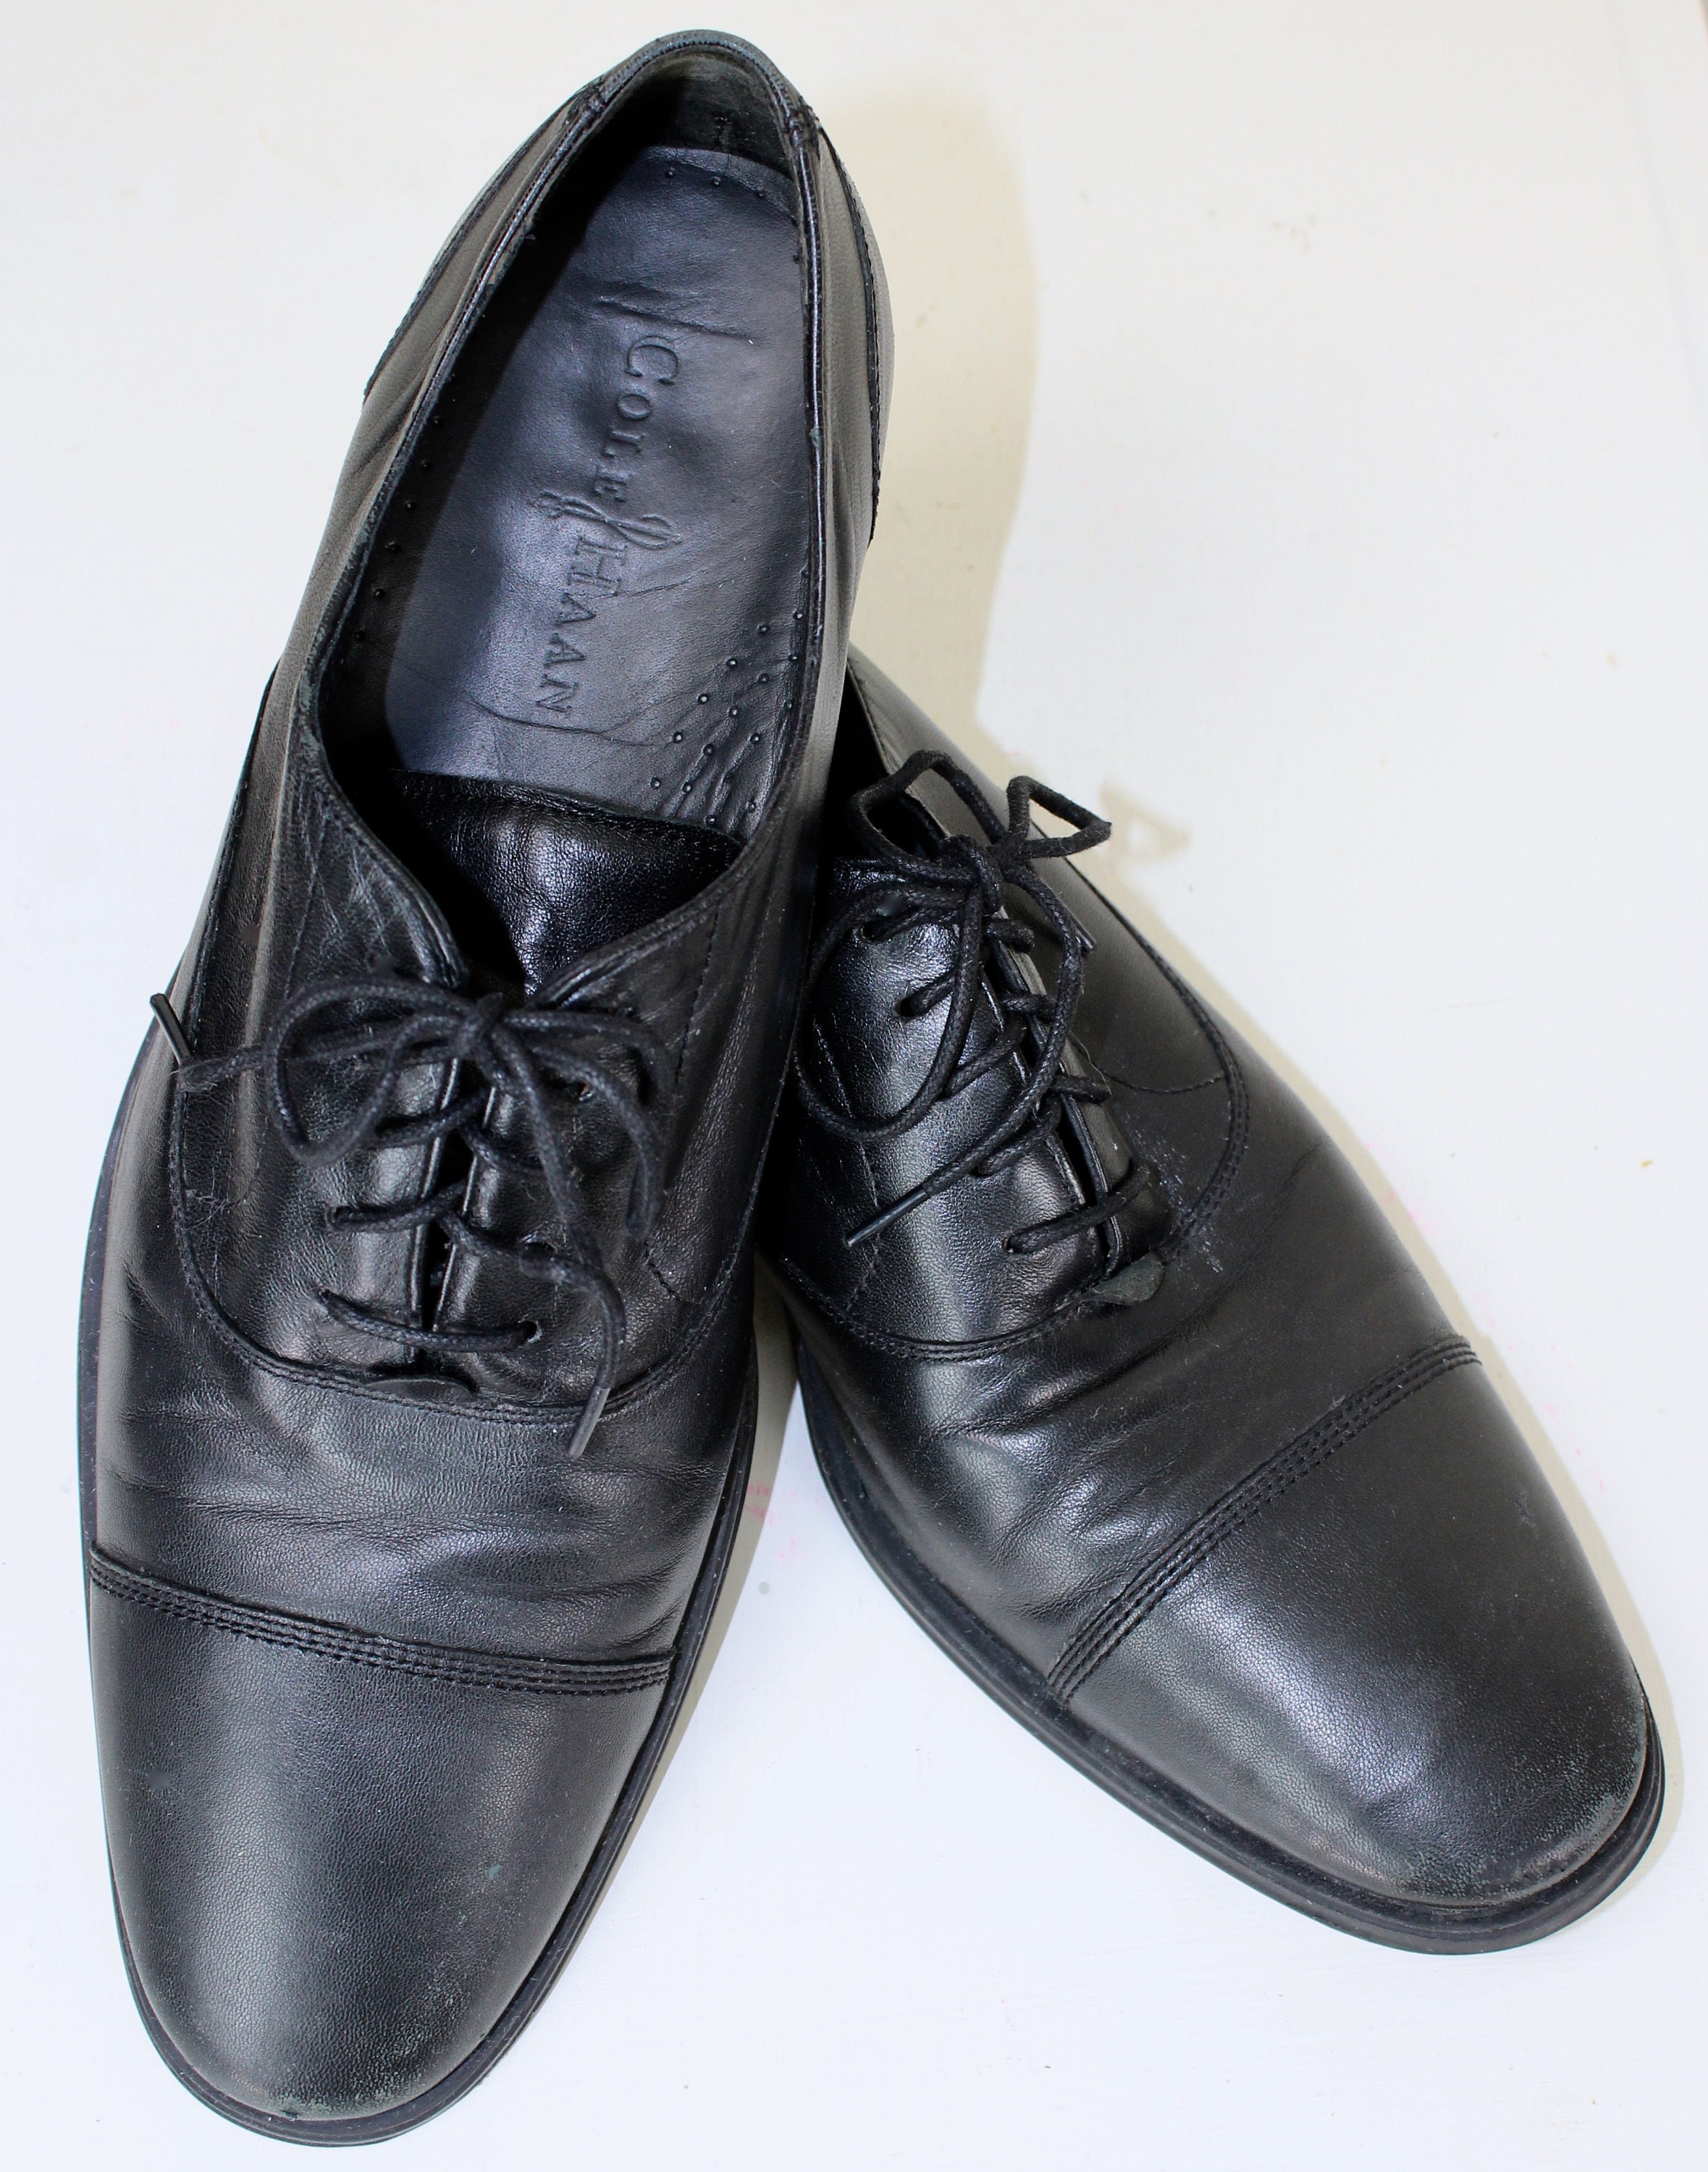 Cole Haan Men's 10.5 M Tuxedo Shoes Black Oxford Lace Up | Etsy